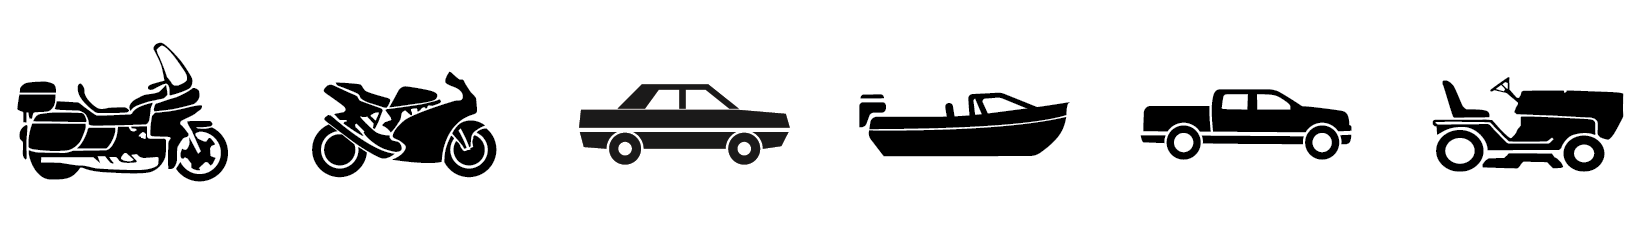 Le chargeur lithium et plomb-acide est recommandé pour moto, motocyclette, moto de sport, voiture, bateau, maritime, pick up et tondeuse à gazon.